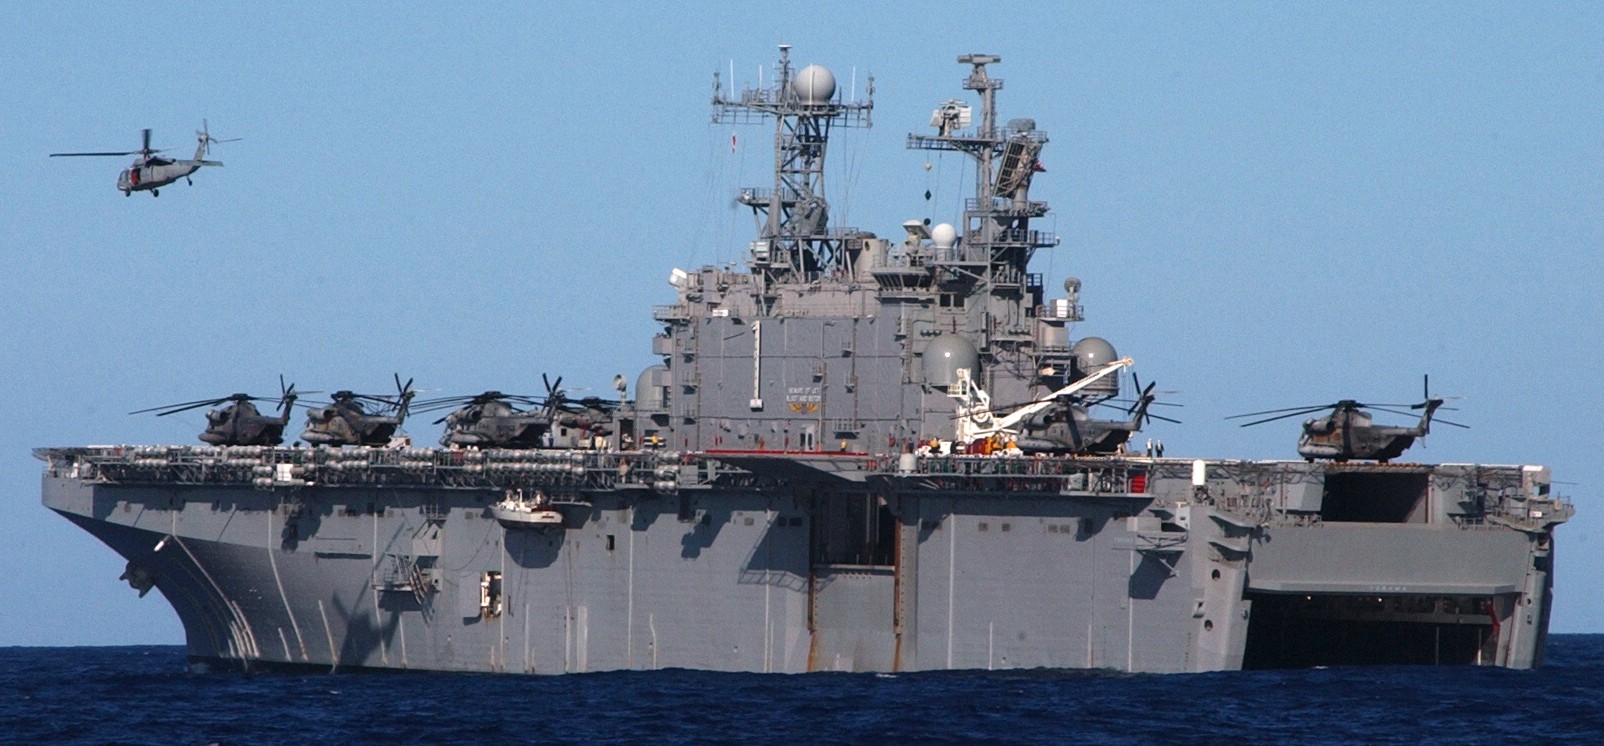 lha-1 uss tarawa amphibious assault ship us navy exercise rimpac 2004 30